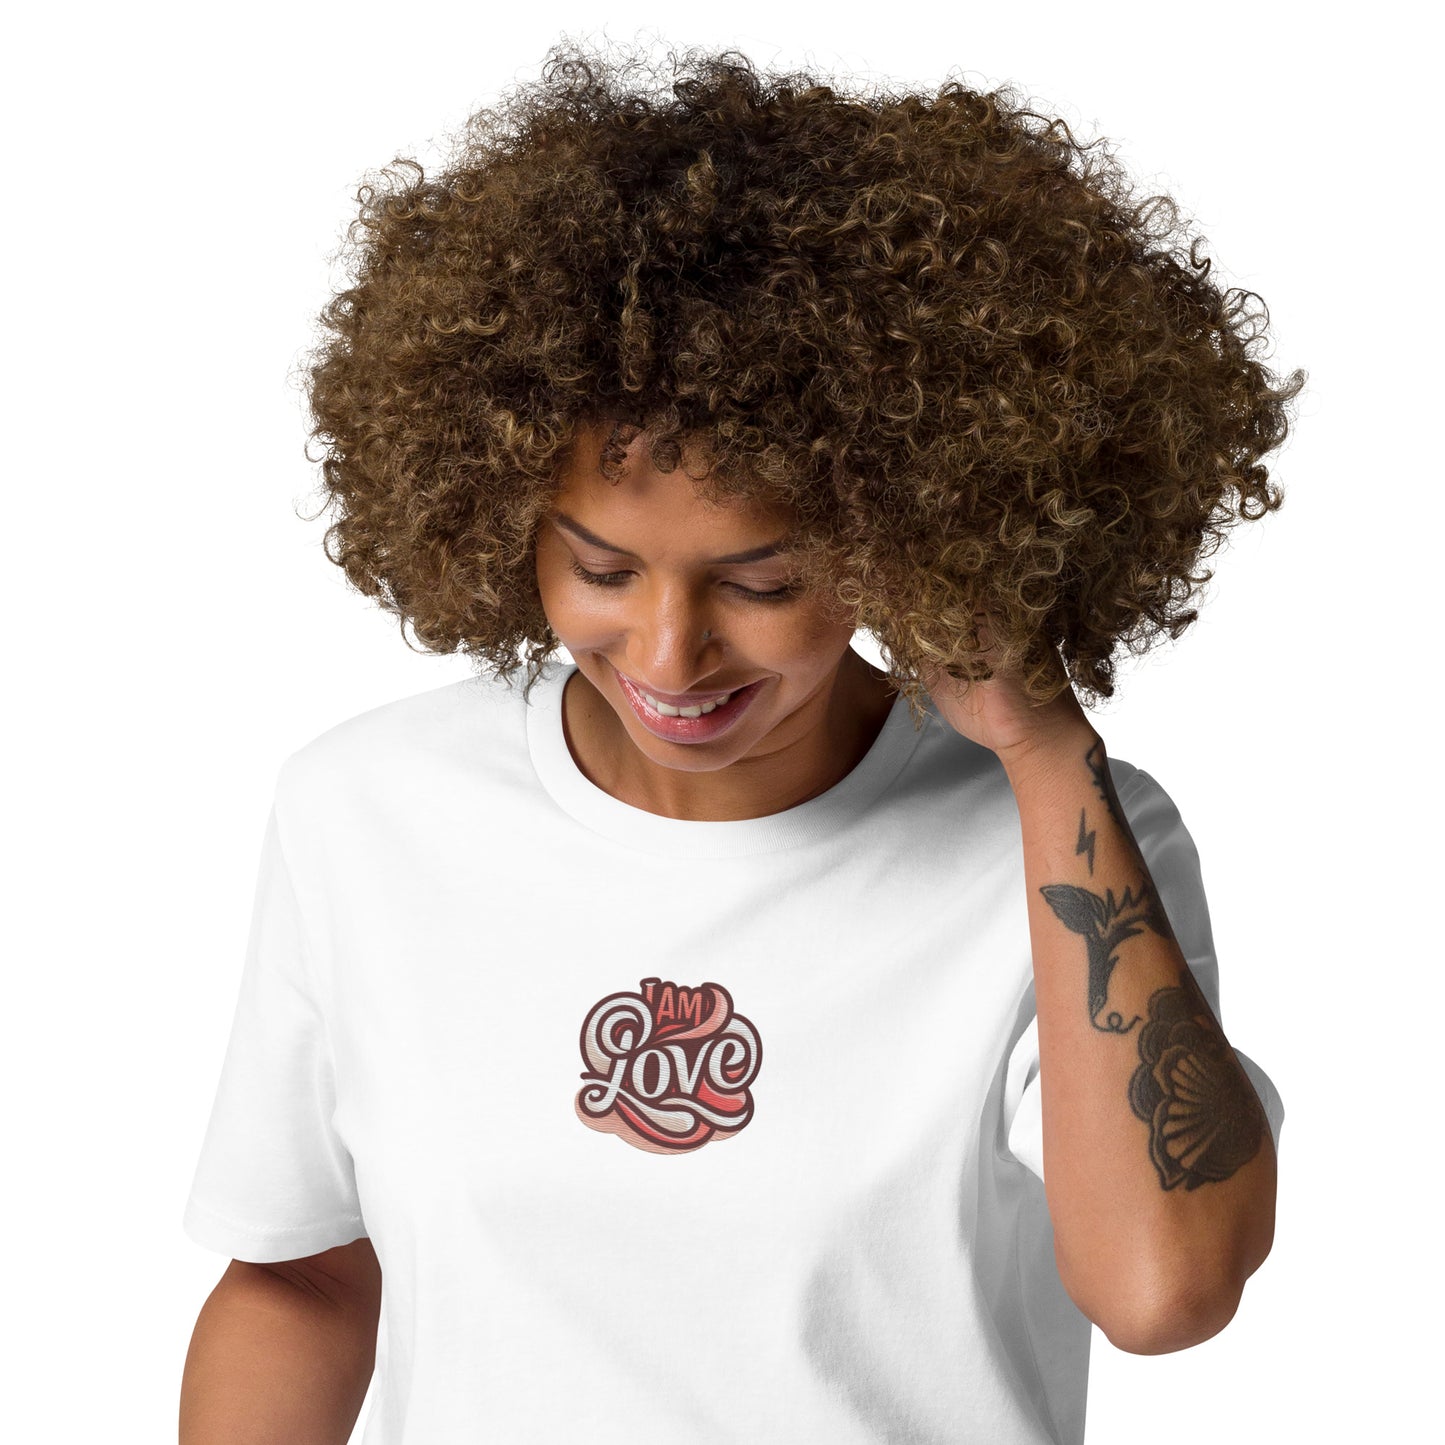 T-shirt Organic  I Am Love- SquadRebel